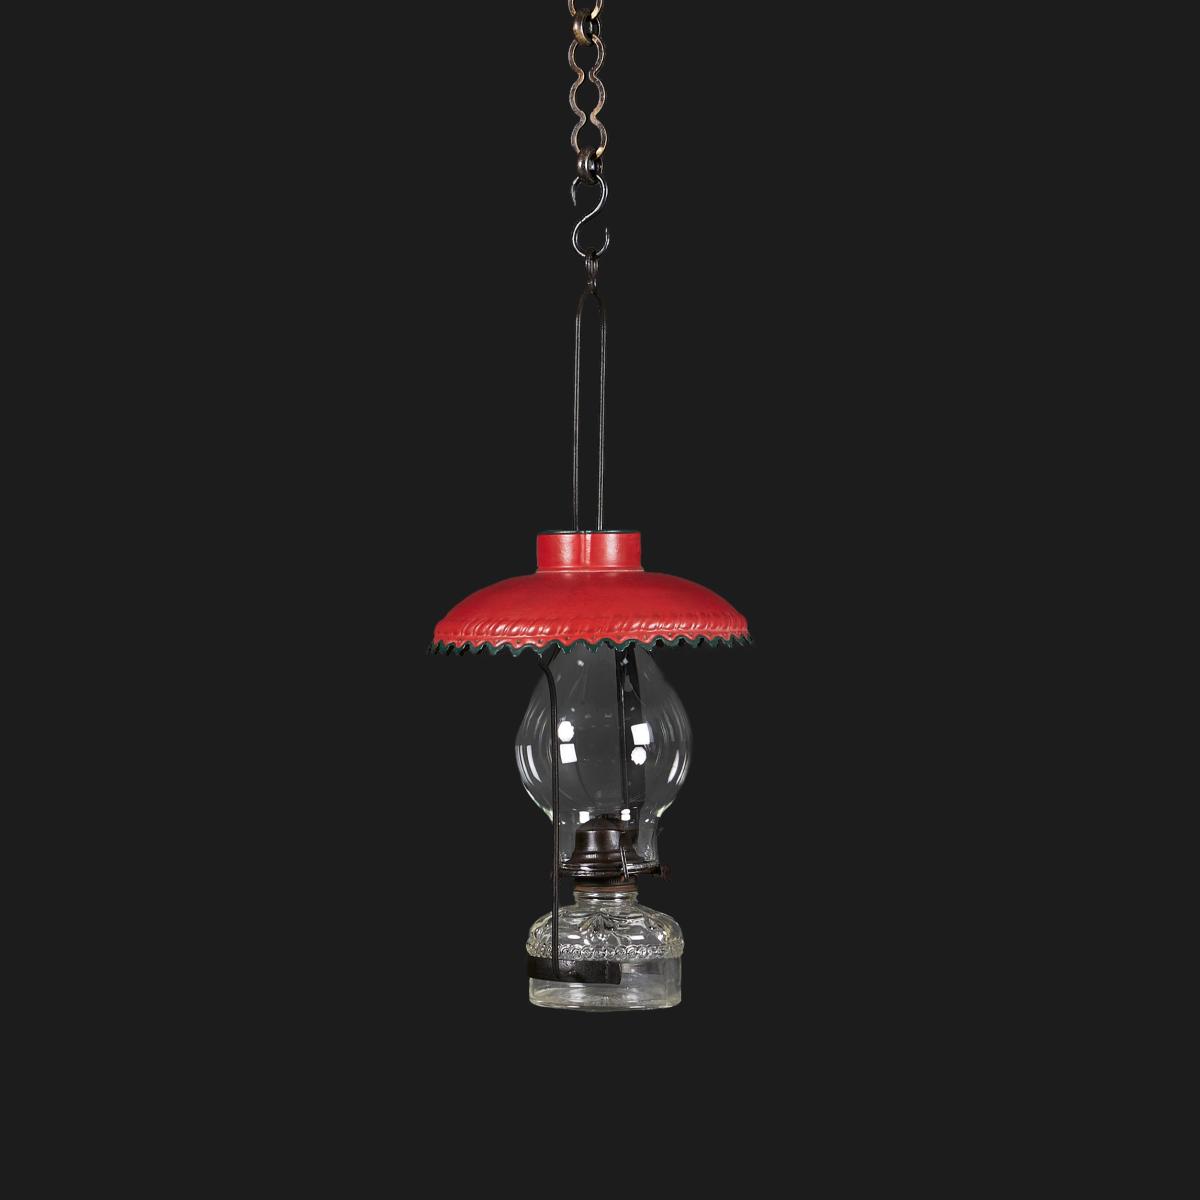 An Edwardian Campaign Hanging Lantern